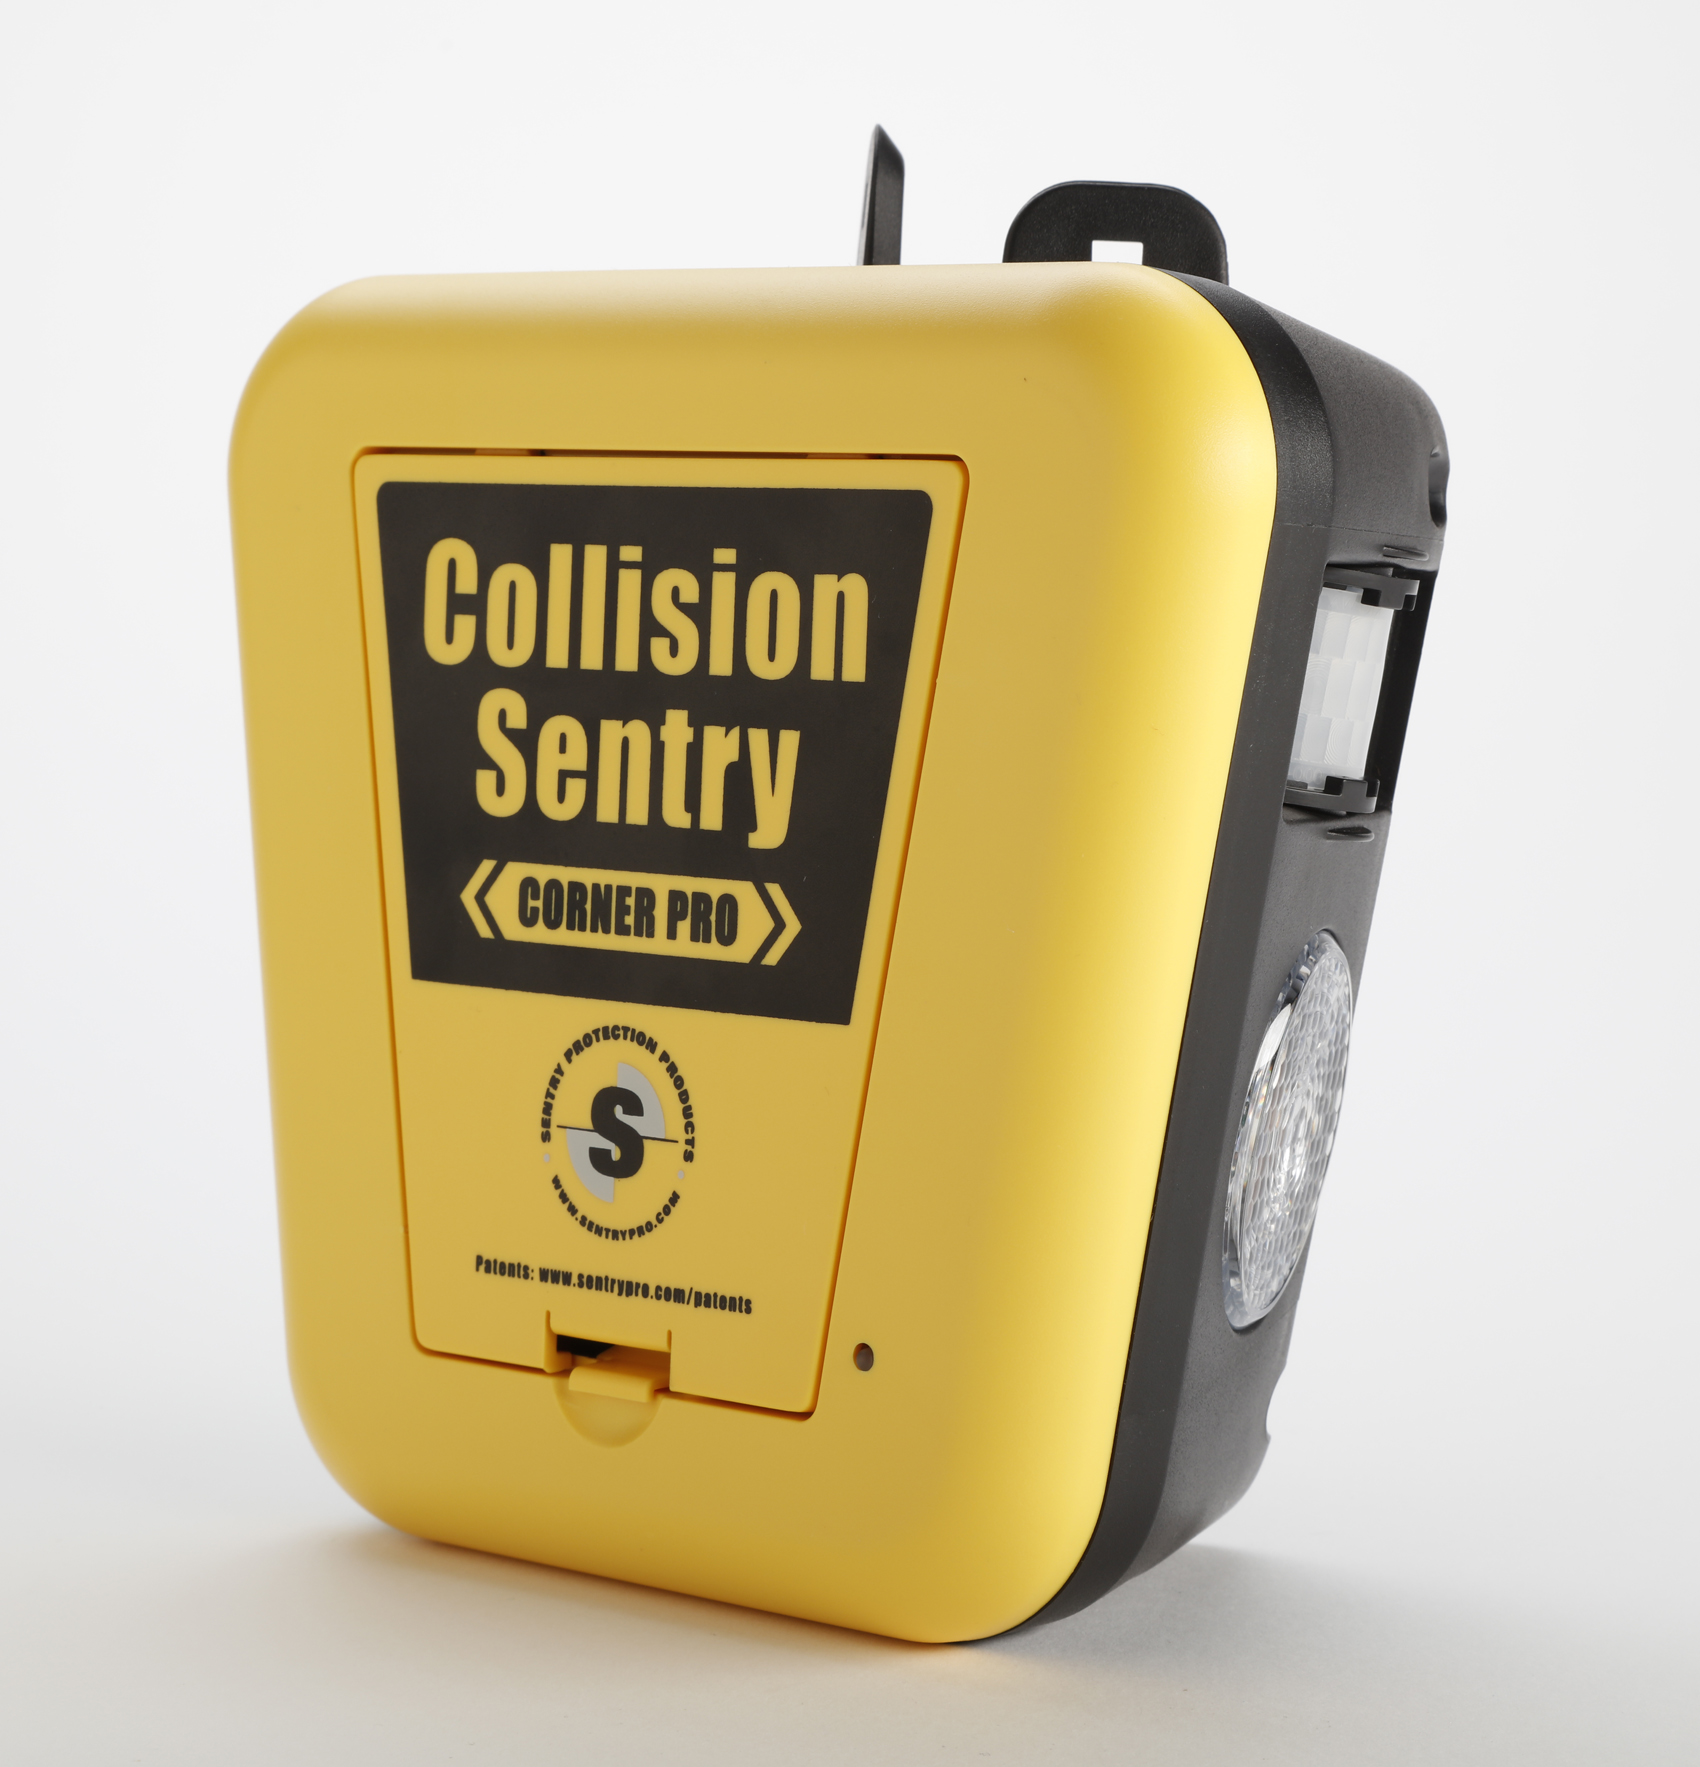 Collision Sentry Corner Pro IR Detection Unit 200 met LED en geluid